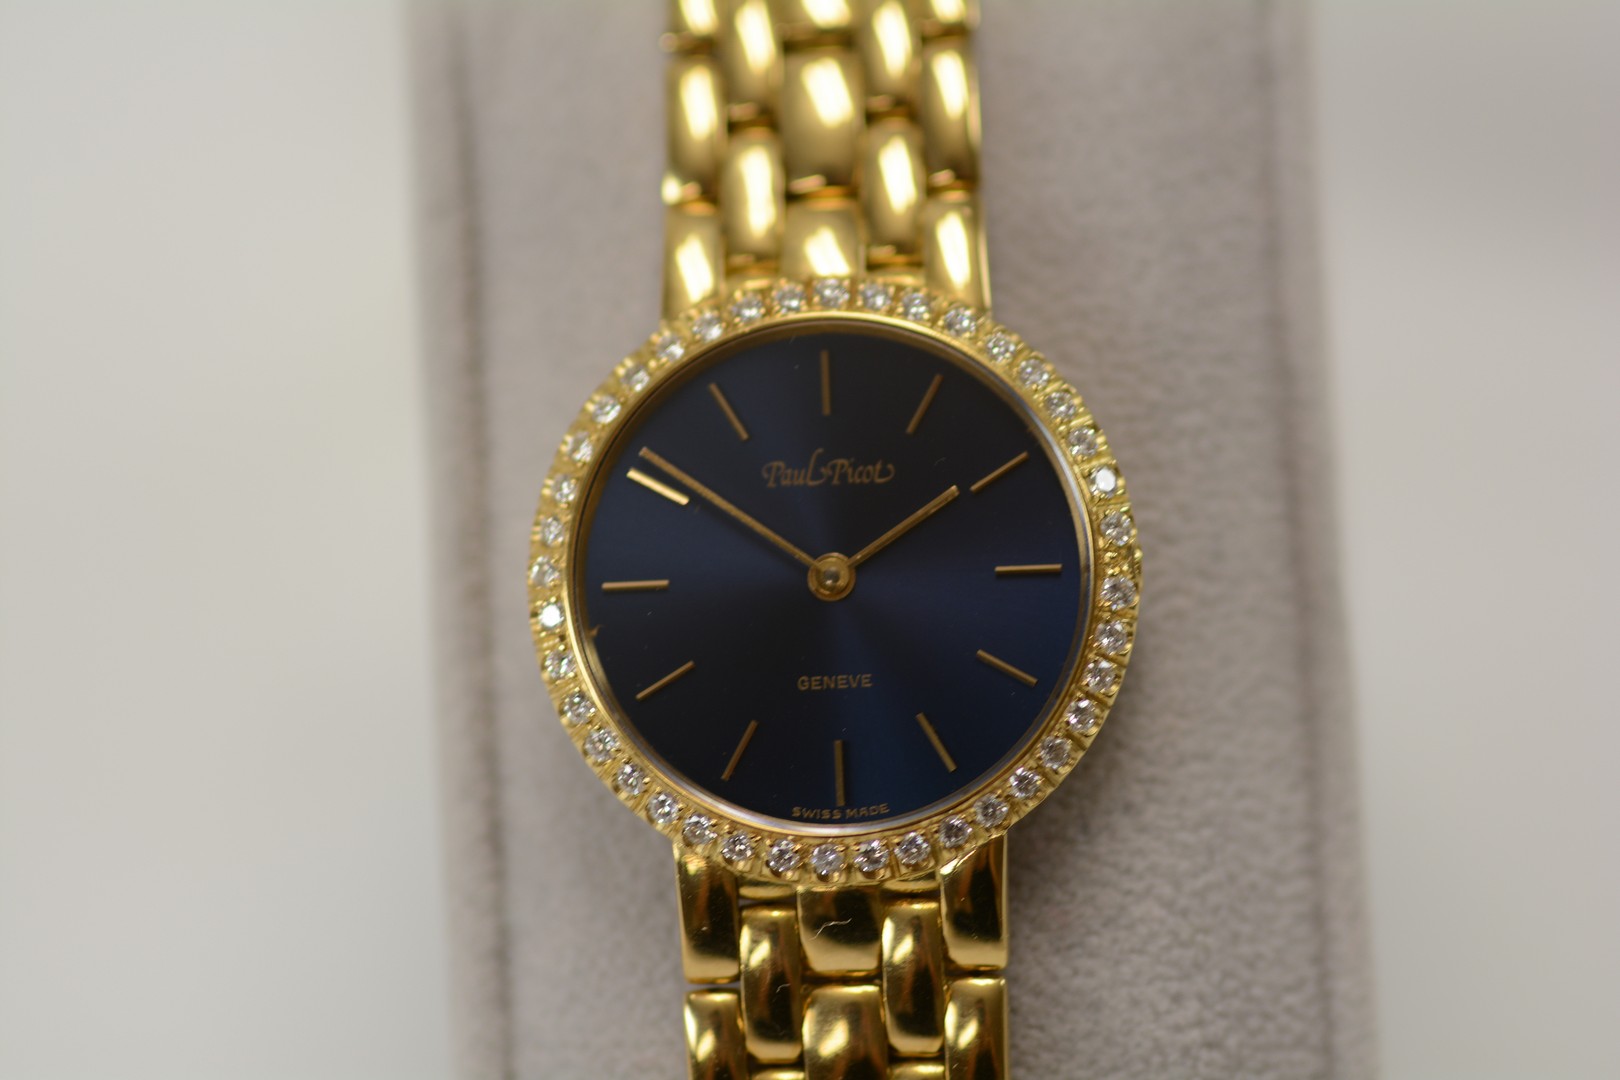 Paul Picot / Diamond - Lady's Yellow gold Wrist Watch - Image 8 of 16